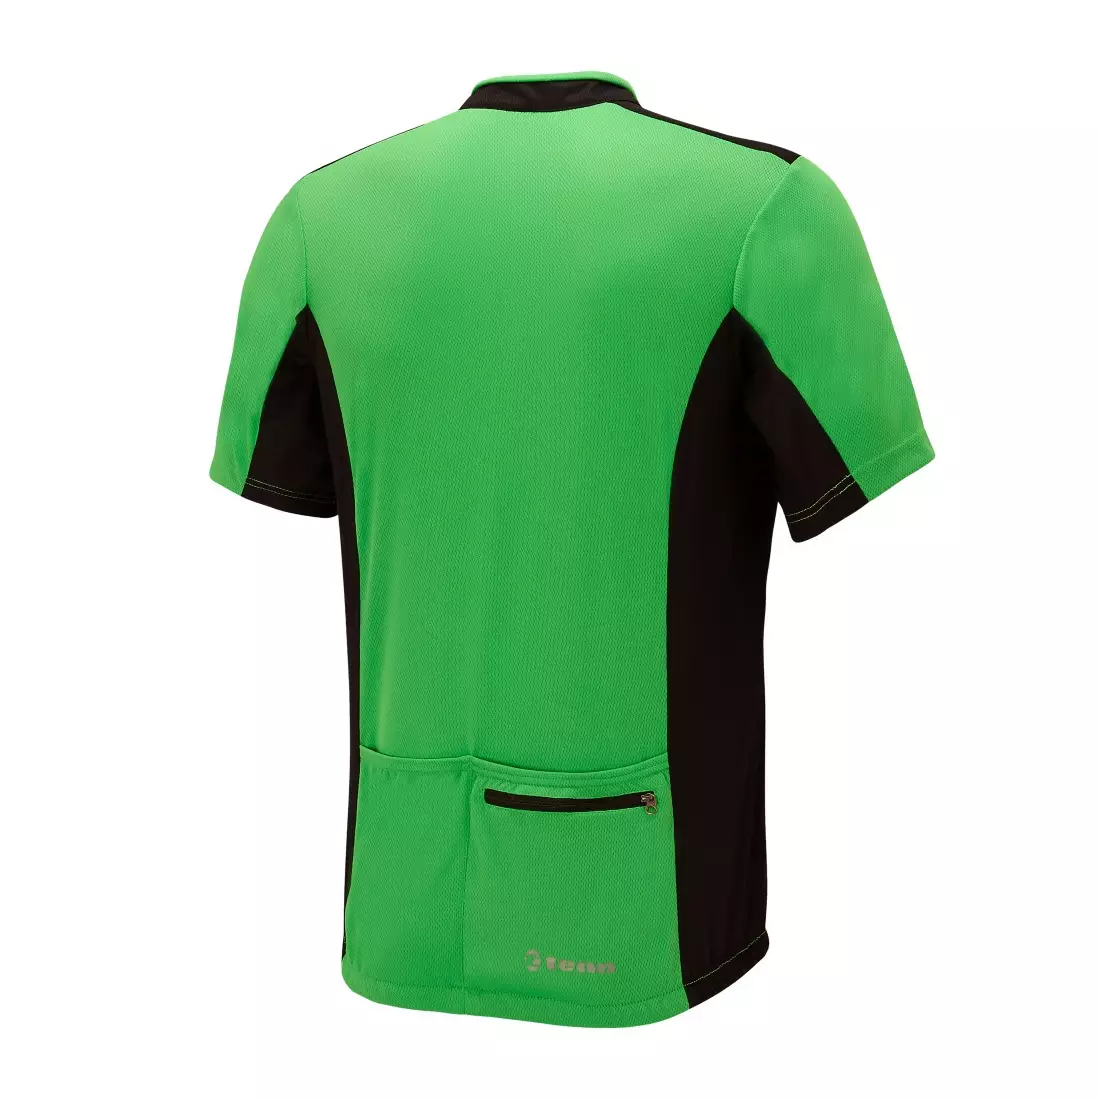 Pánsky cyklistický dres TENN OUTDOORS COOLFLO zelenej a čiernej farby